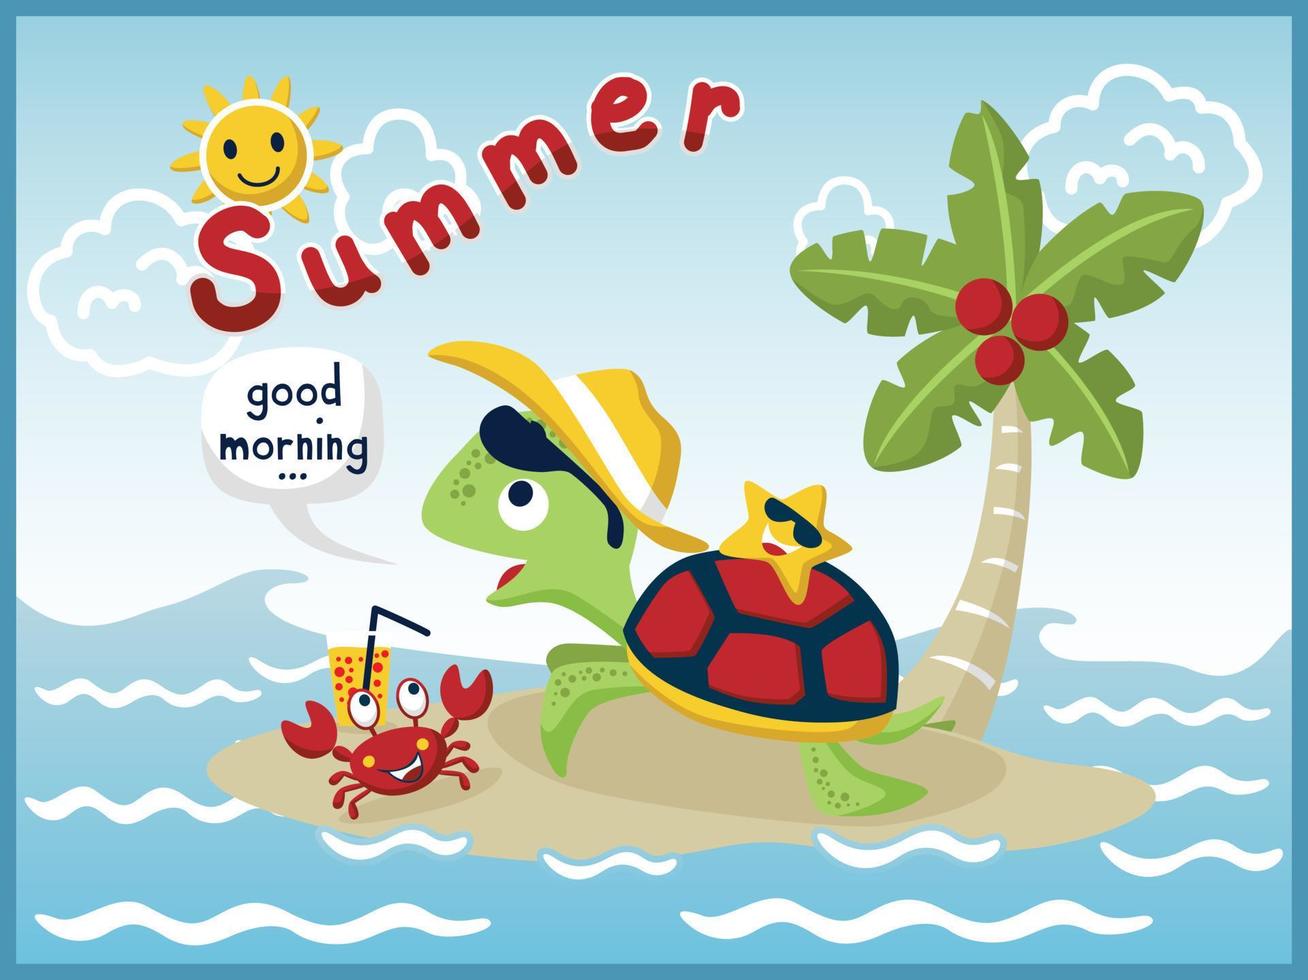 karikaturvektor der lustigen schildkröte mit krabben und seesternen auf der kleinen insel, sommerferienelemente vektor